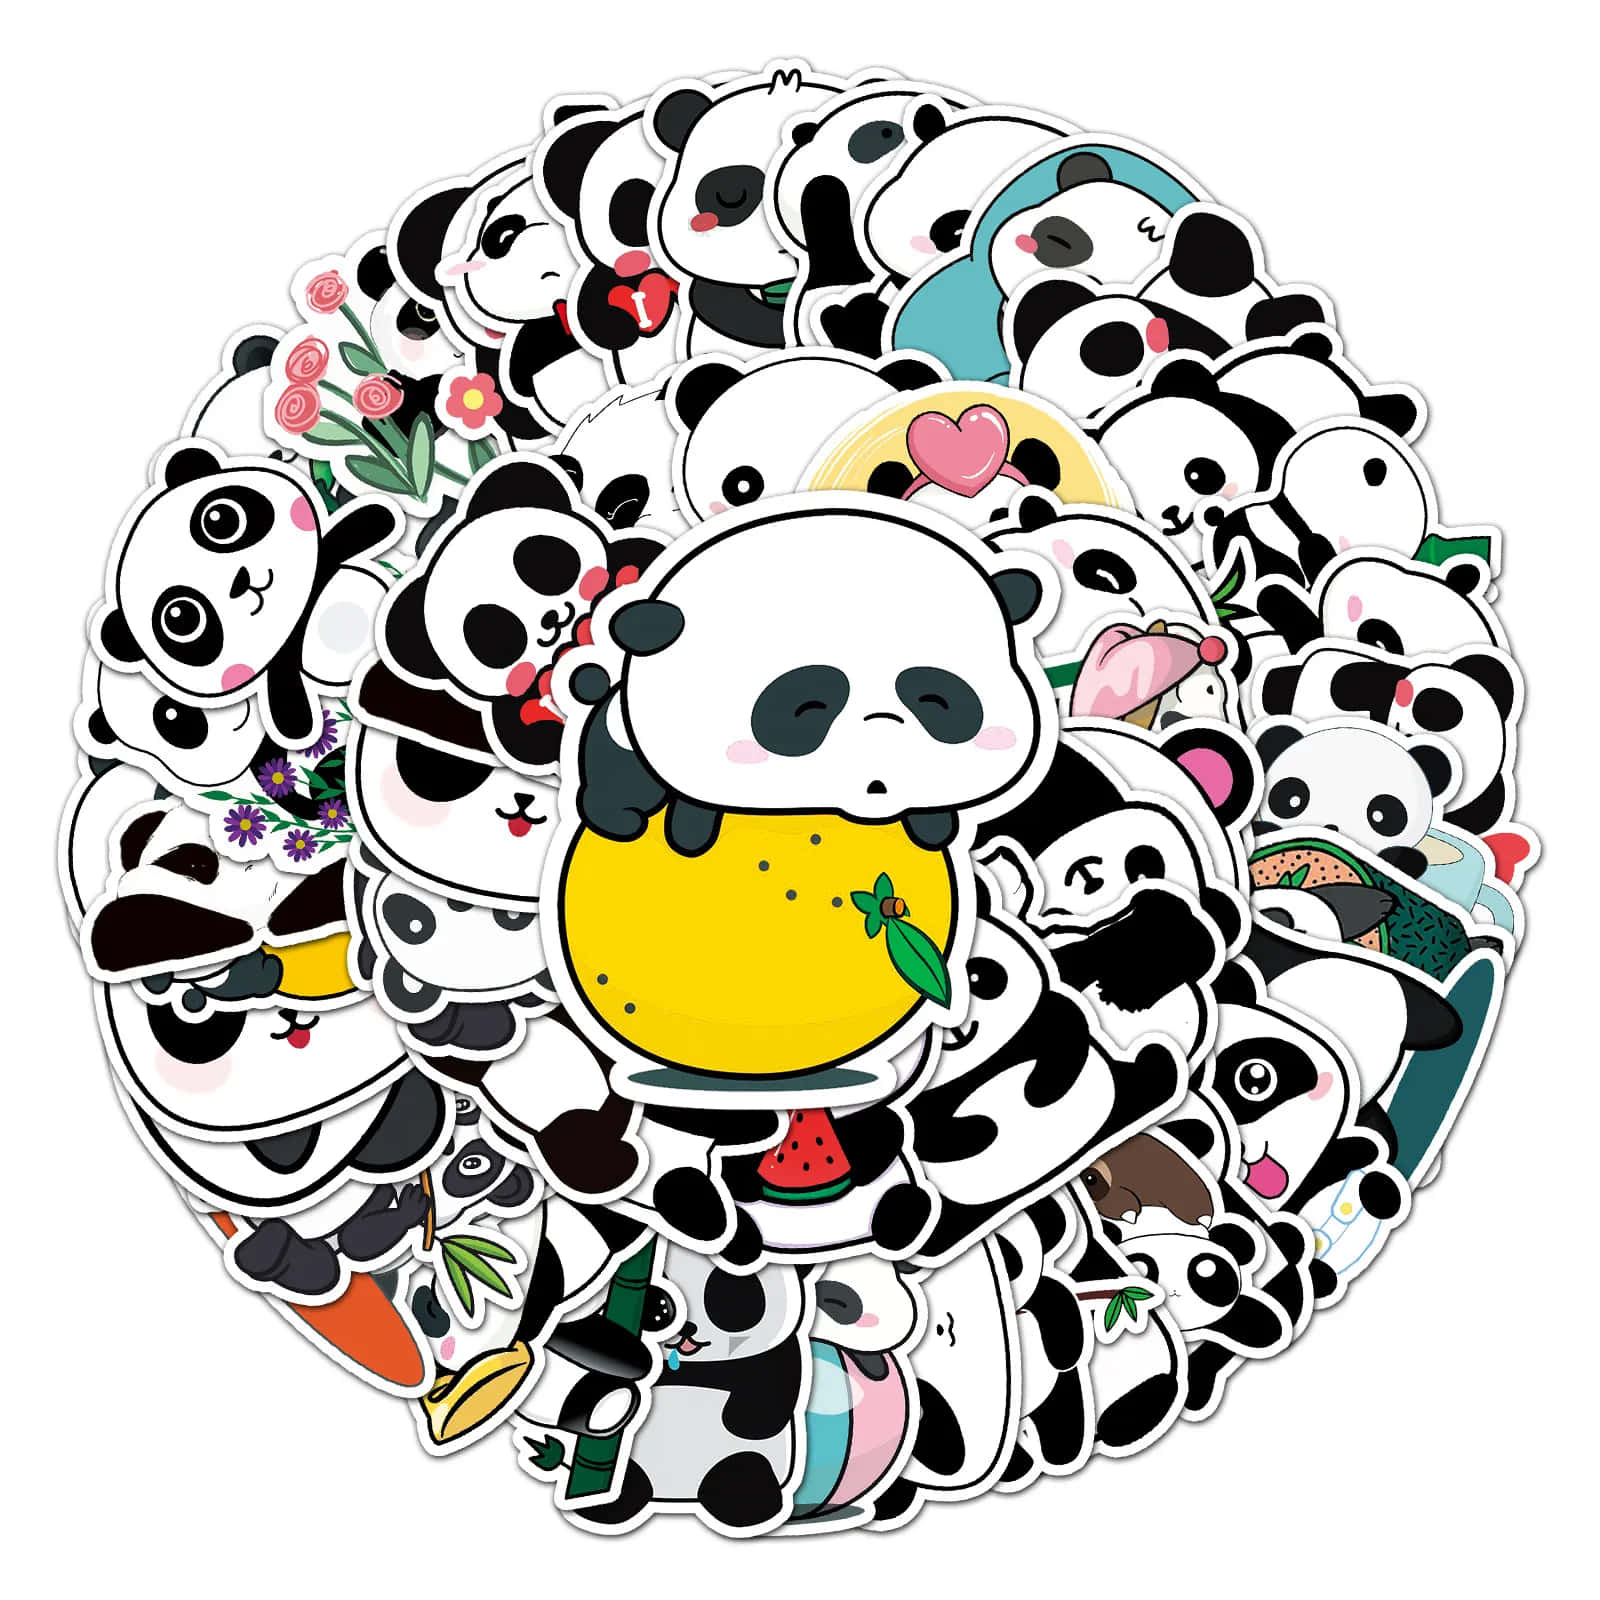 Encirkel Av Panda Klistermärken I En Cirkel